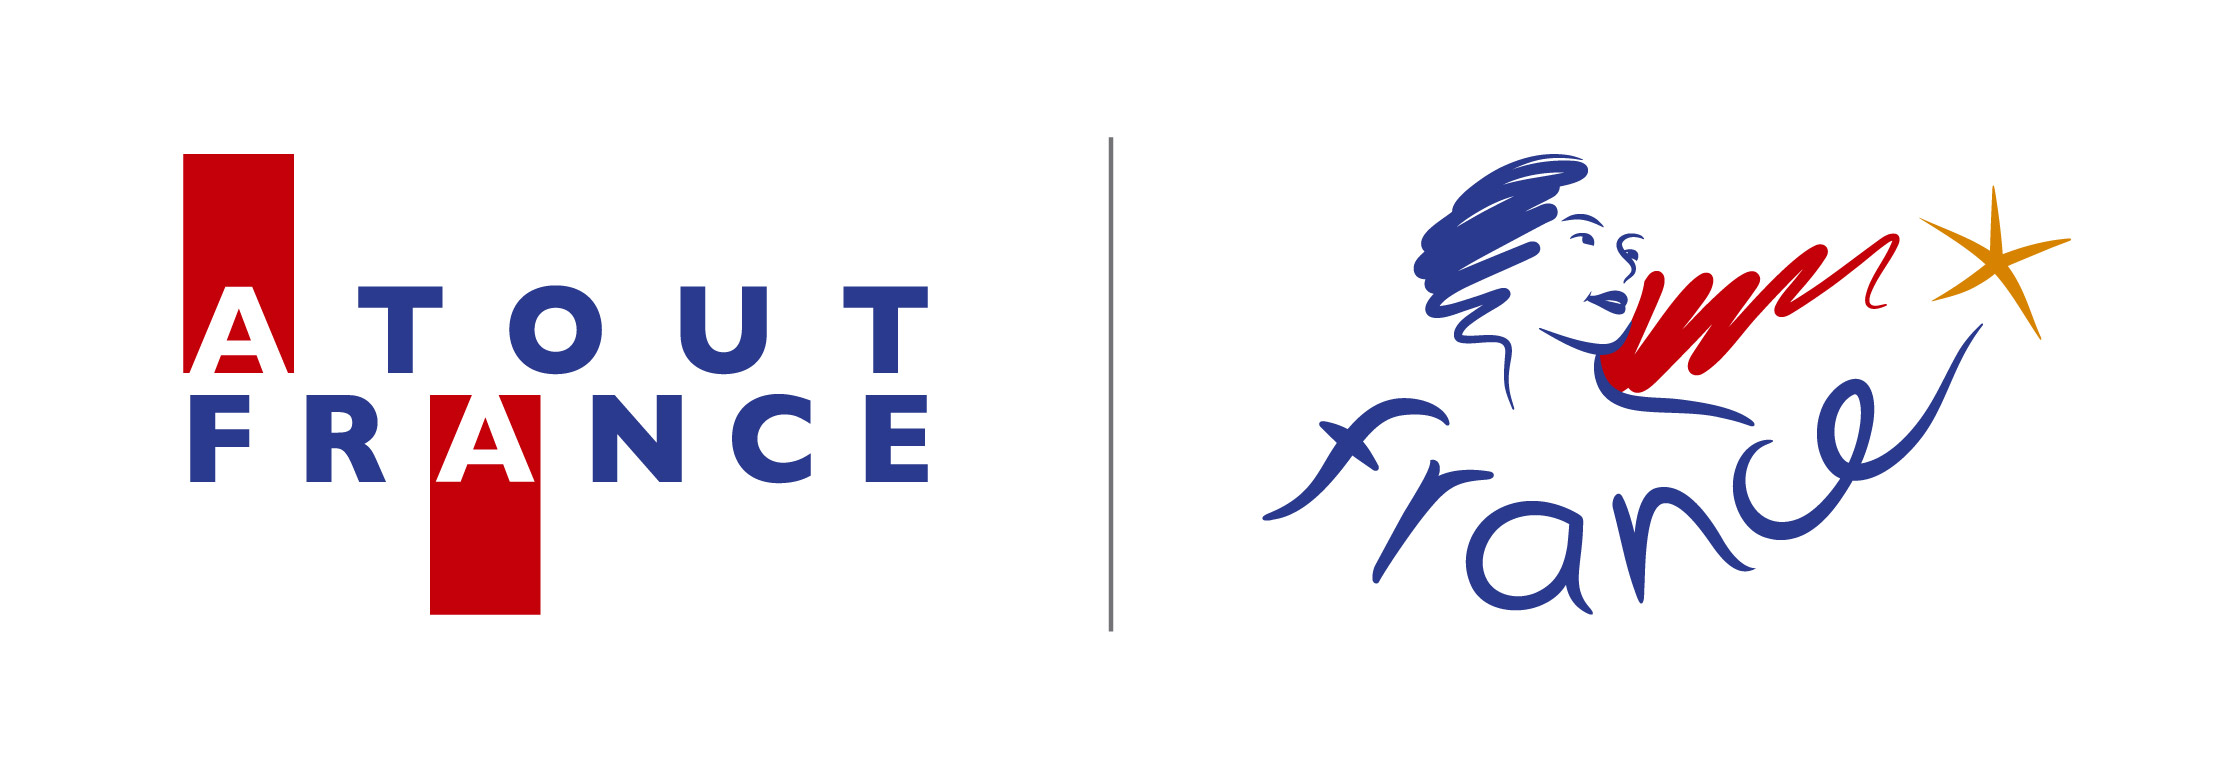 Atout France logo